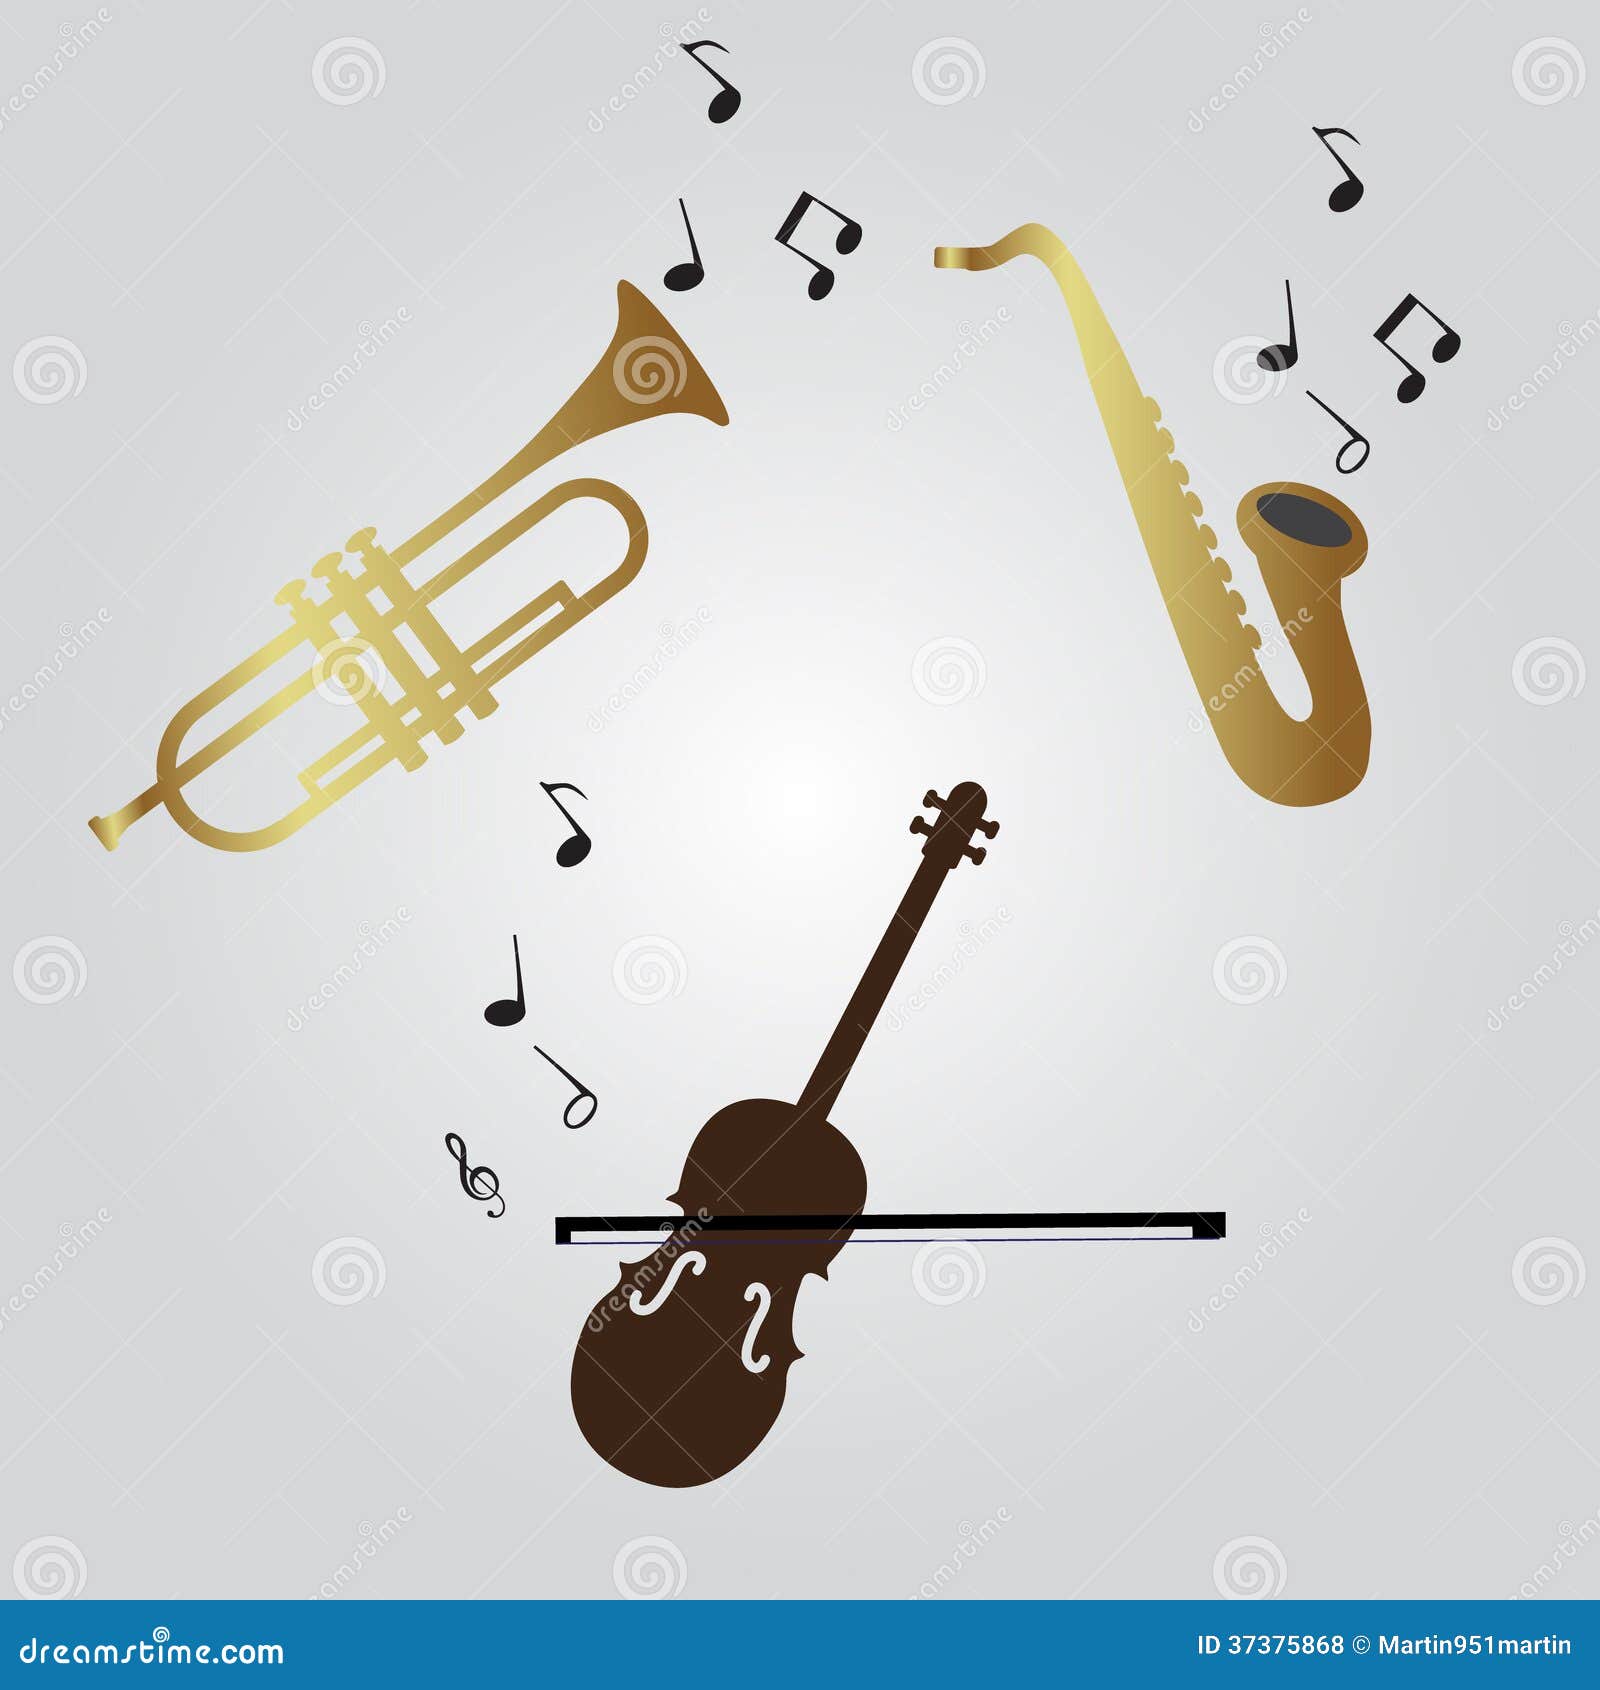 lente traidor Refinería Violin, Trumpet and Saxophone Icons Stock Vector - Illustration of design,  brown: 37375868